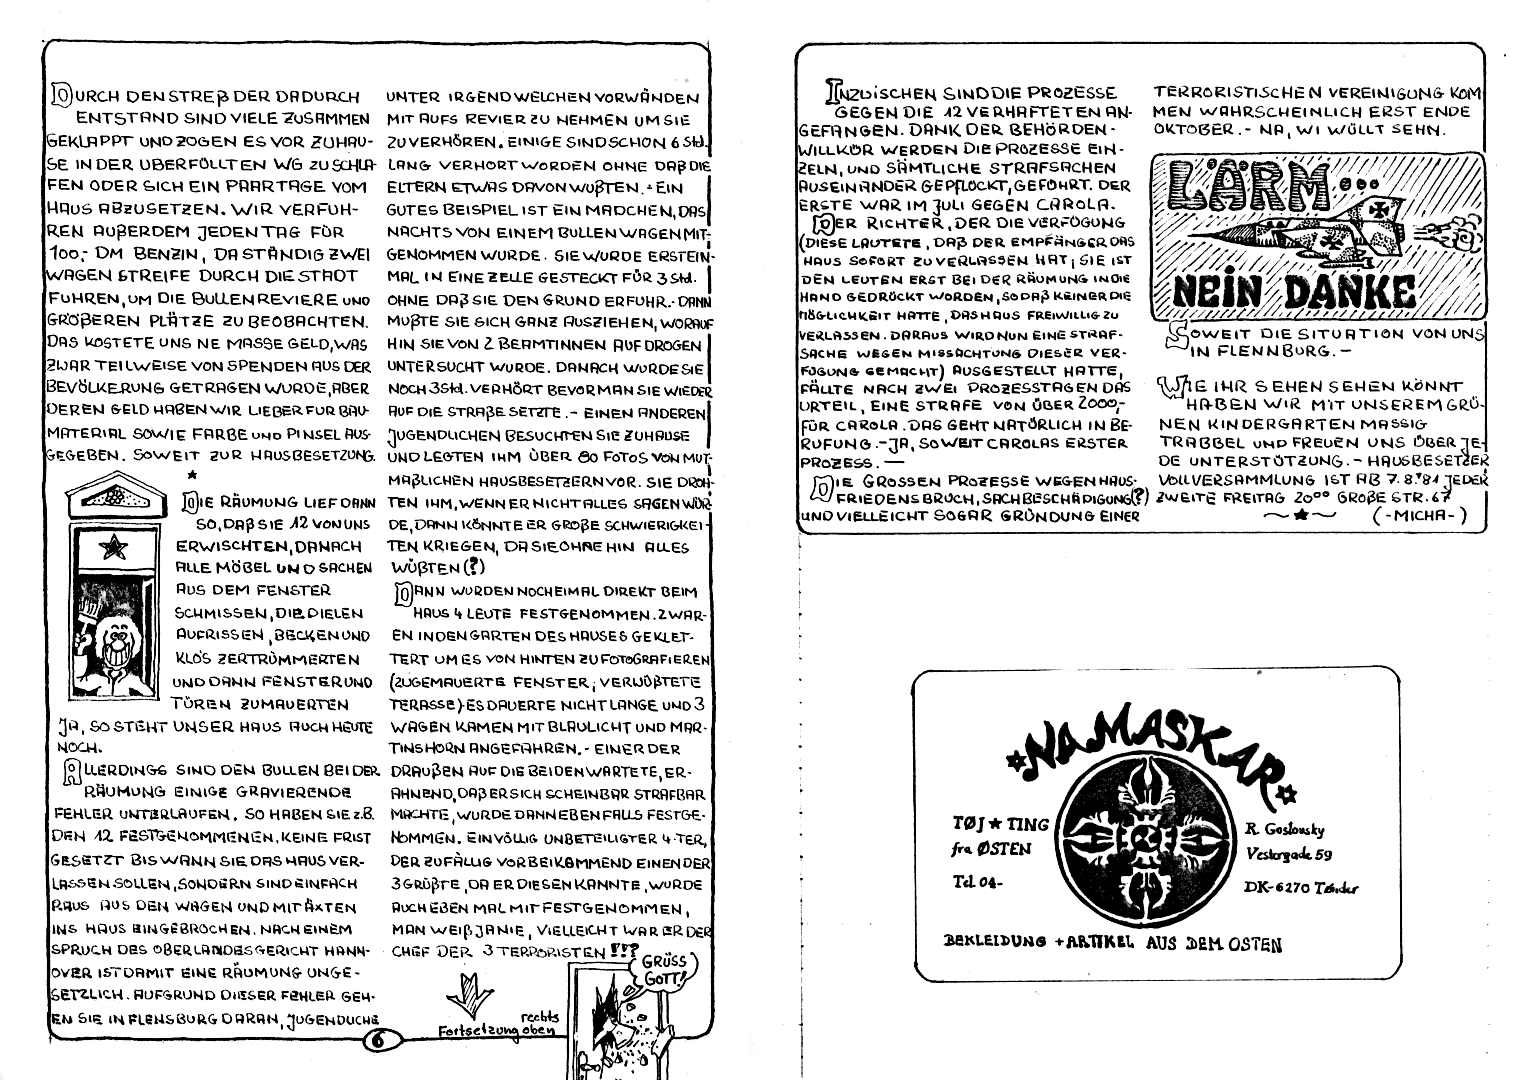 HZ 4 - Seite 6 und 7